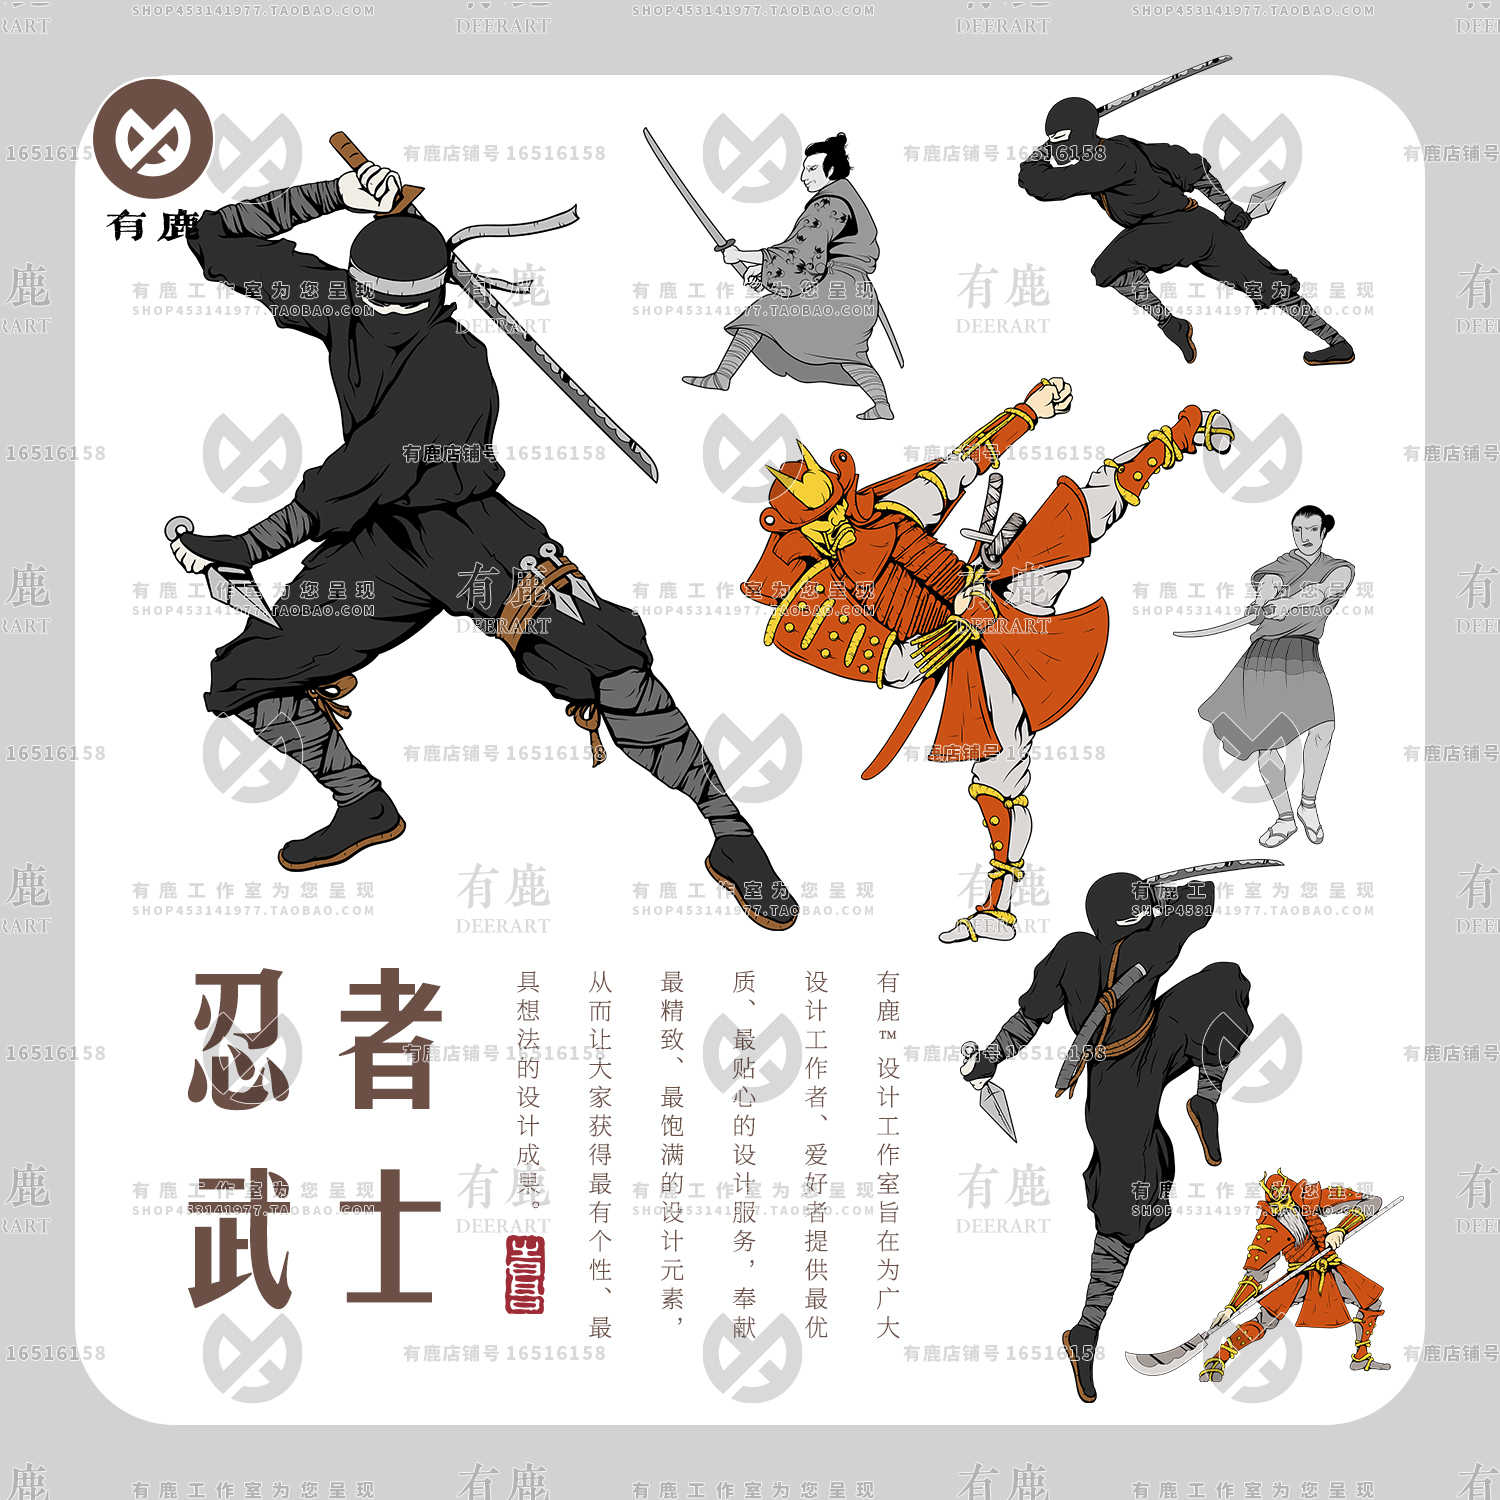 日本忍者武士浪人搏击武术动作招式手绘插画矢量素材png免抠图案